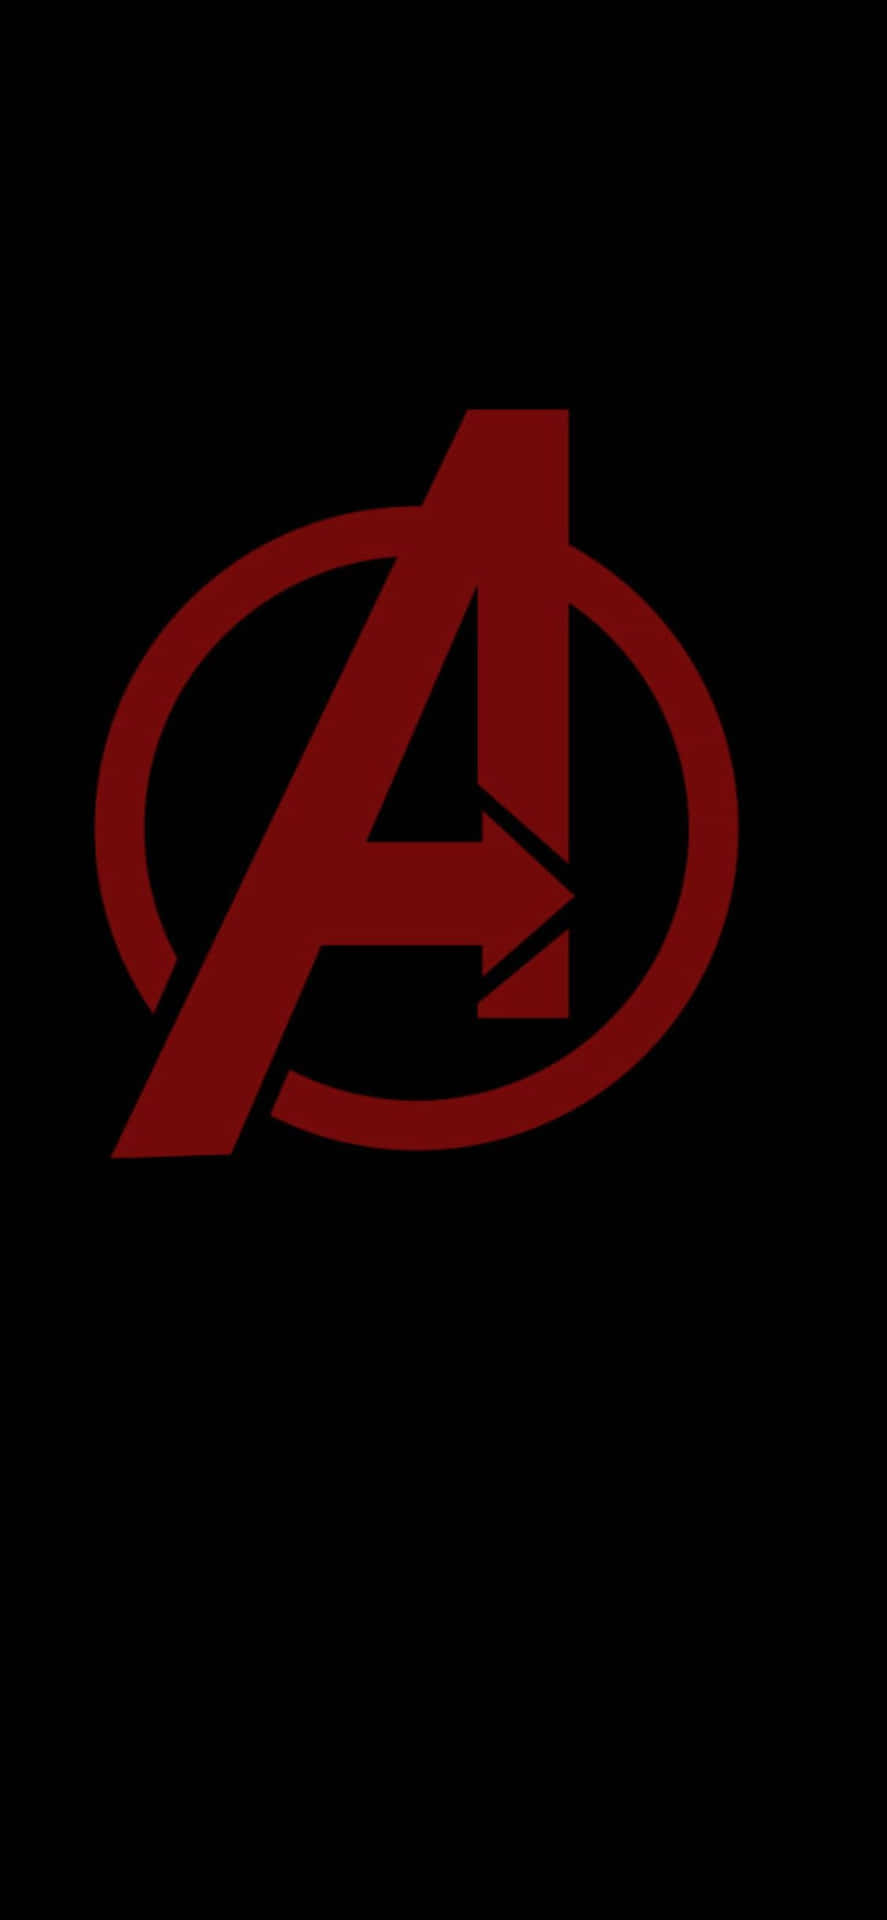 Dunklerminimalistischer Hintergrund Mit Avengers-logo Für Das Iphone Xs